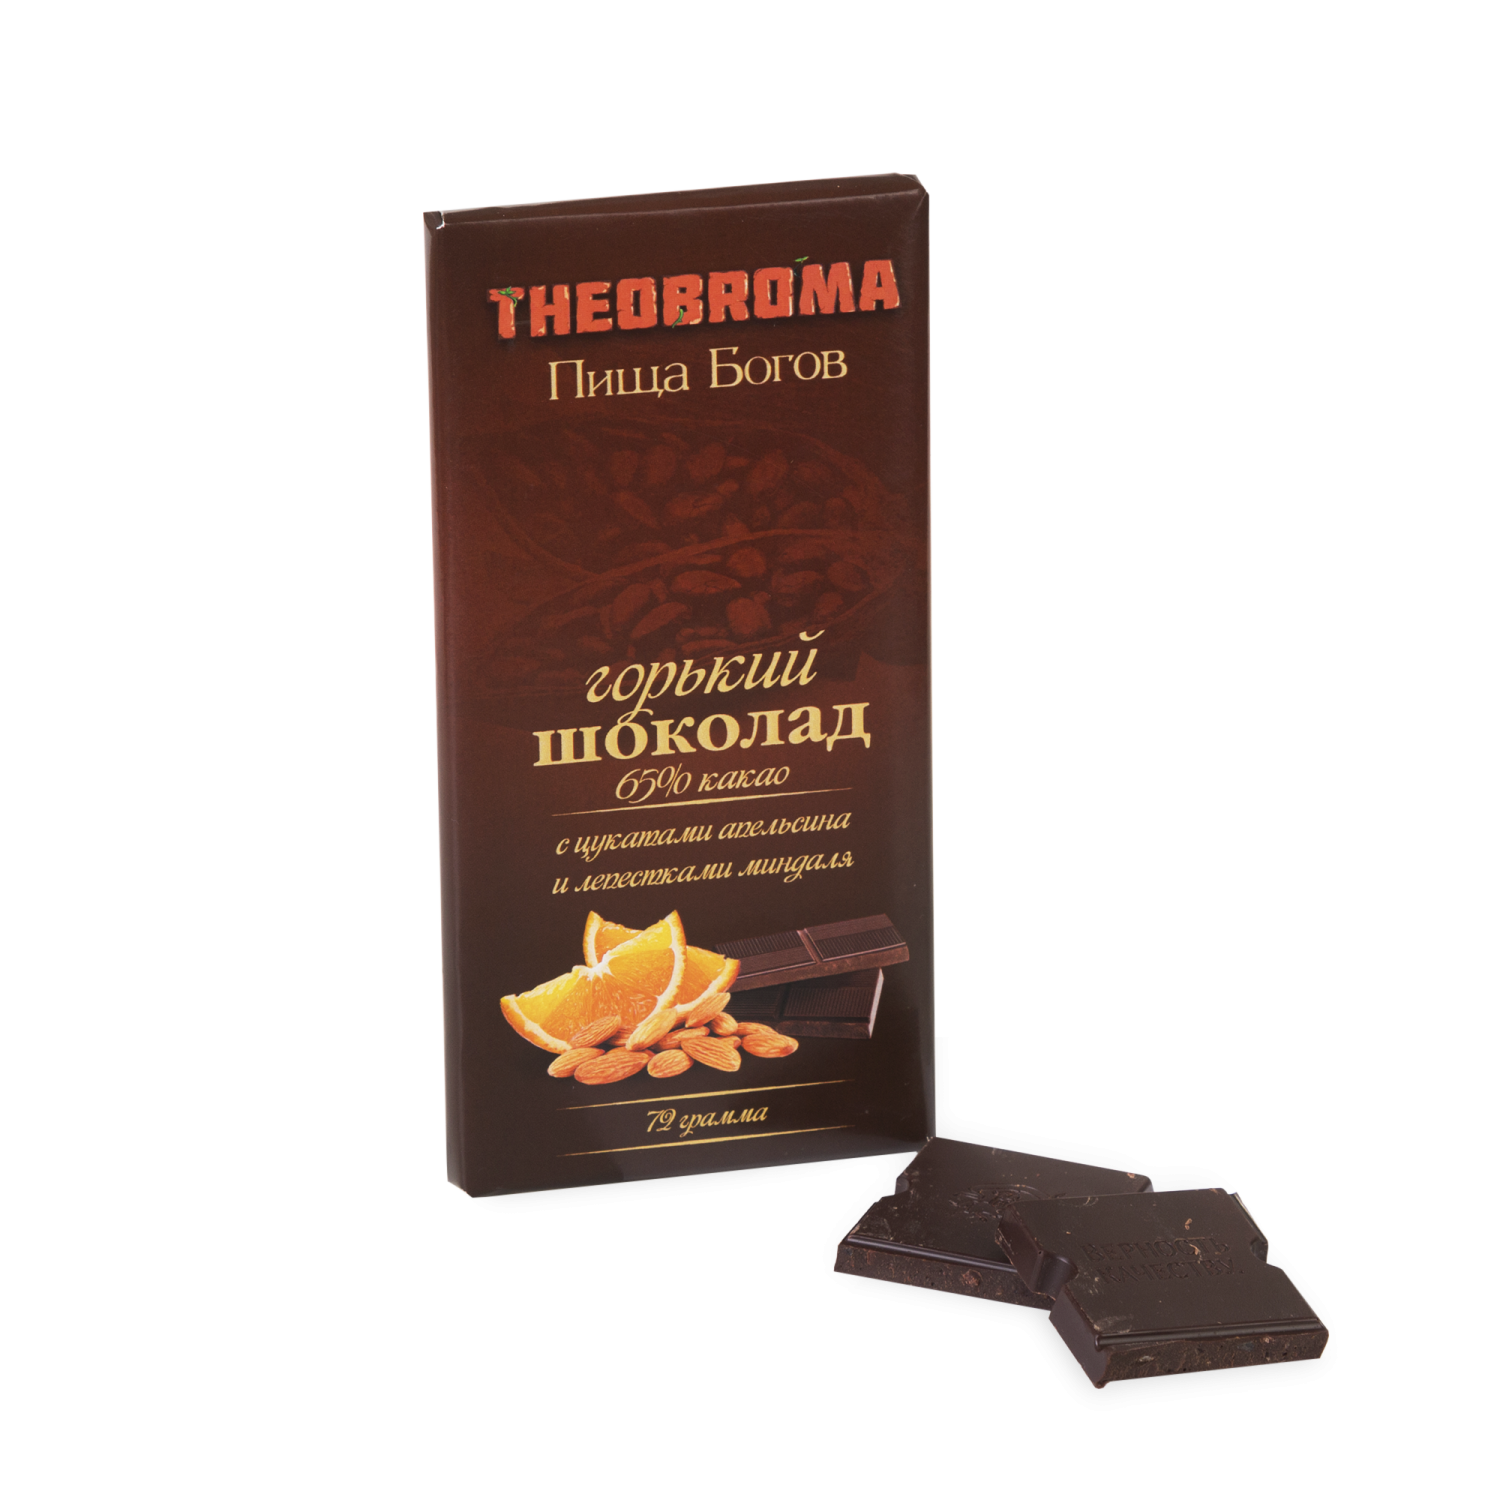 Горький шоколад апельсин-миндаль "Theobroma", 72 г